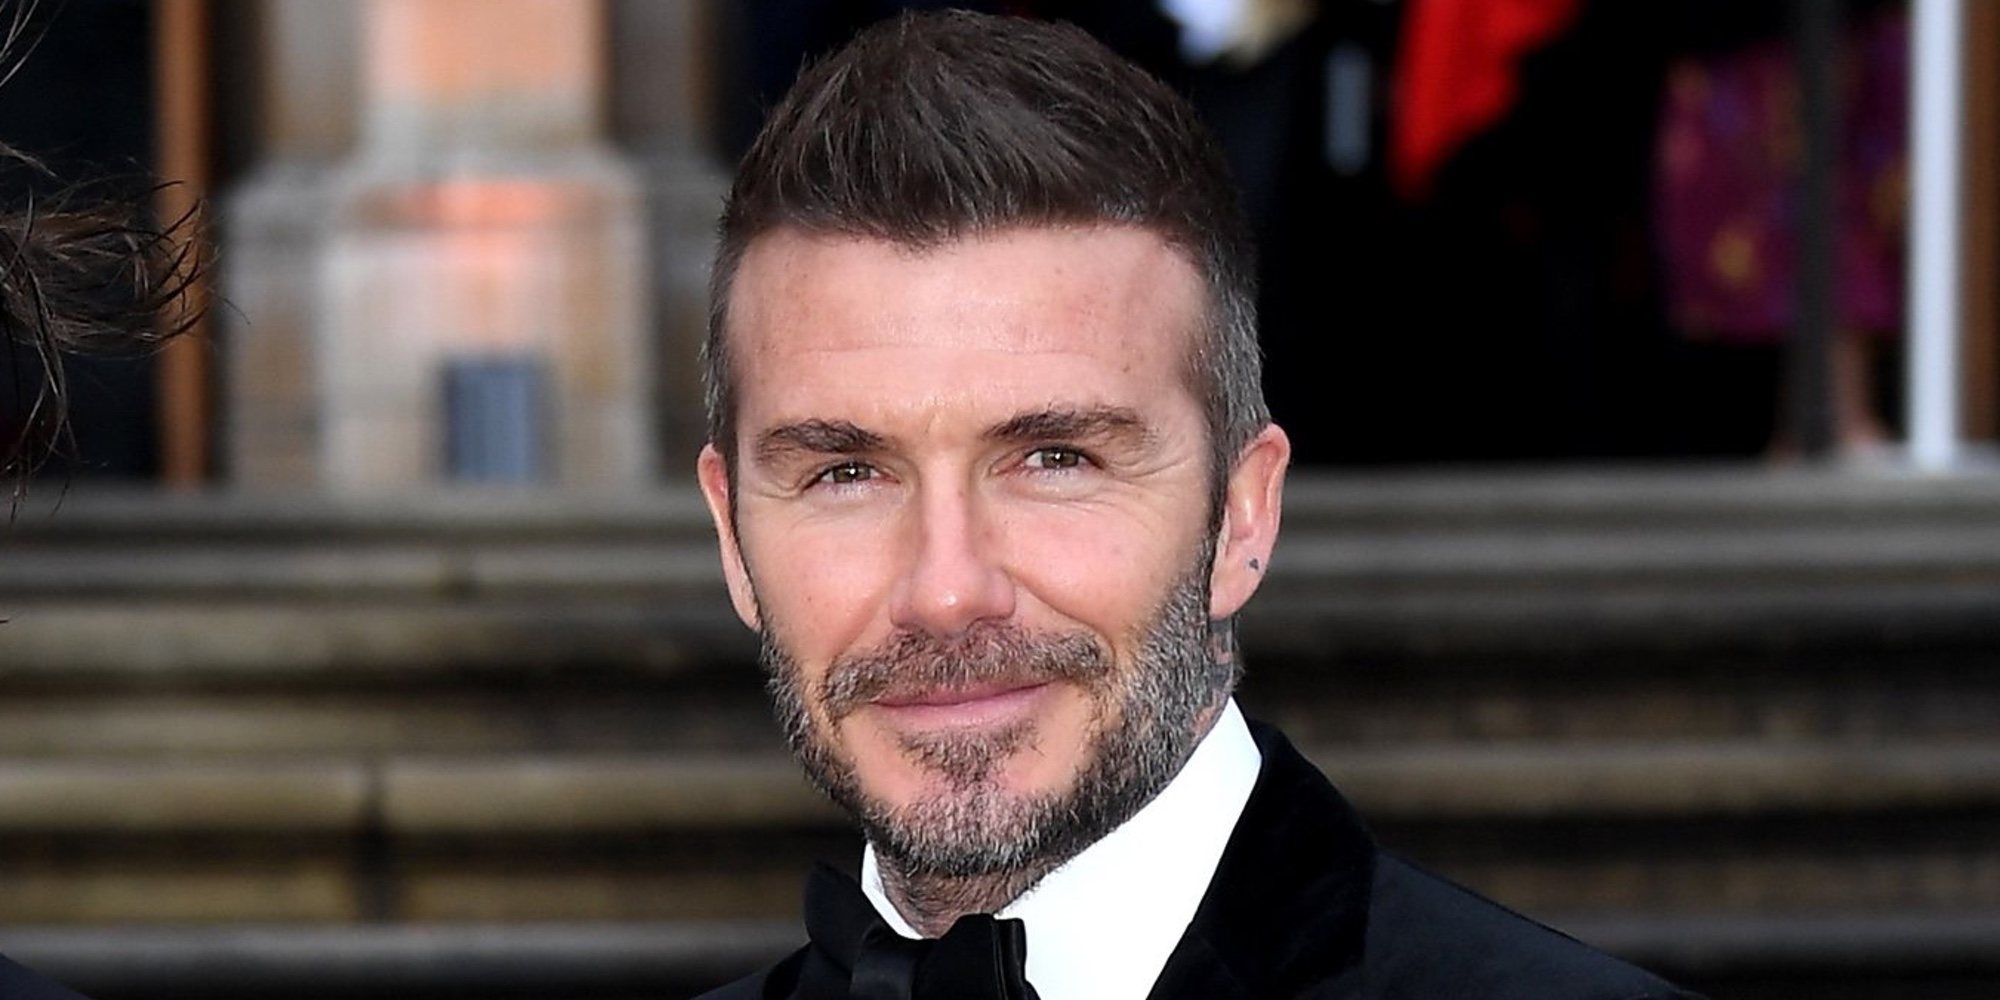 David Beckham, el británico que más dinero gana gracias a sus publicaciones en las redes sociales